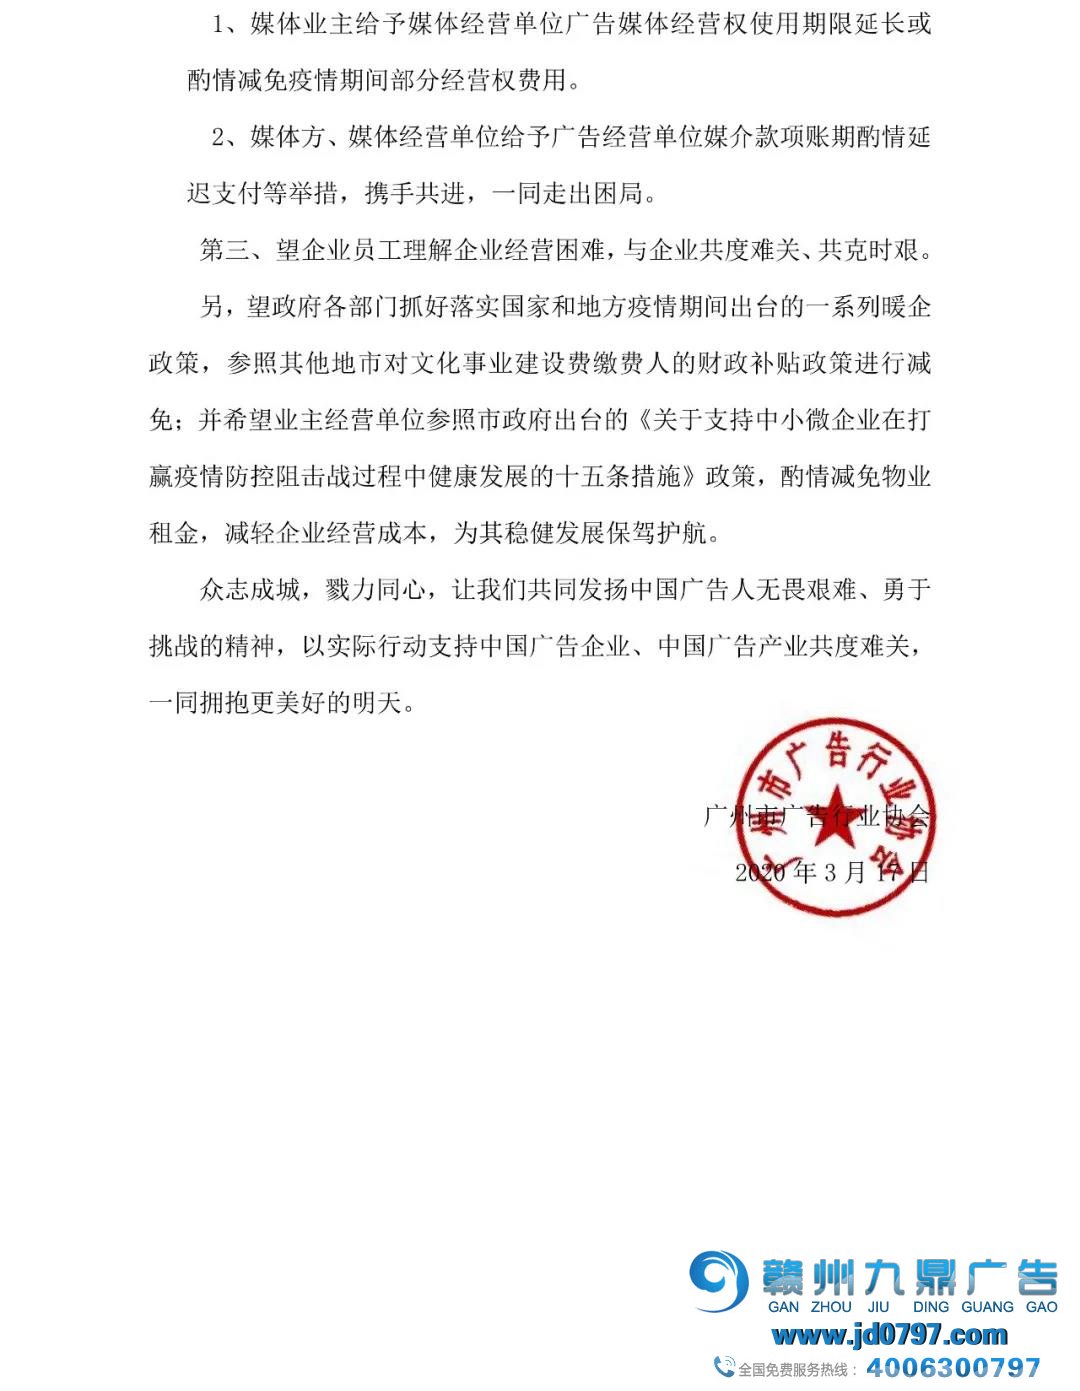 疫情之下 共克时艰-广州市广告行业协会关于行业筹谋的下令